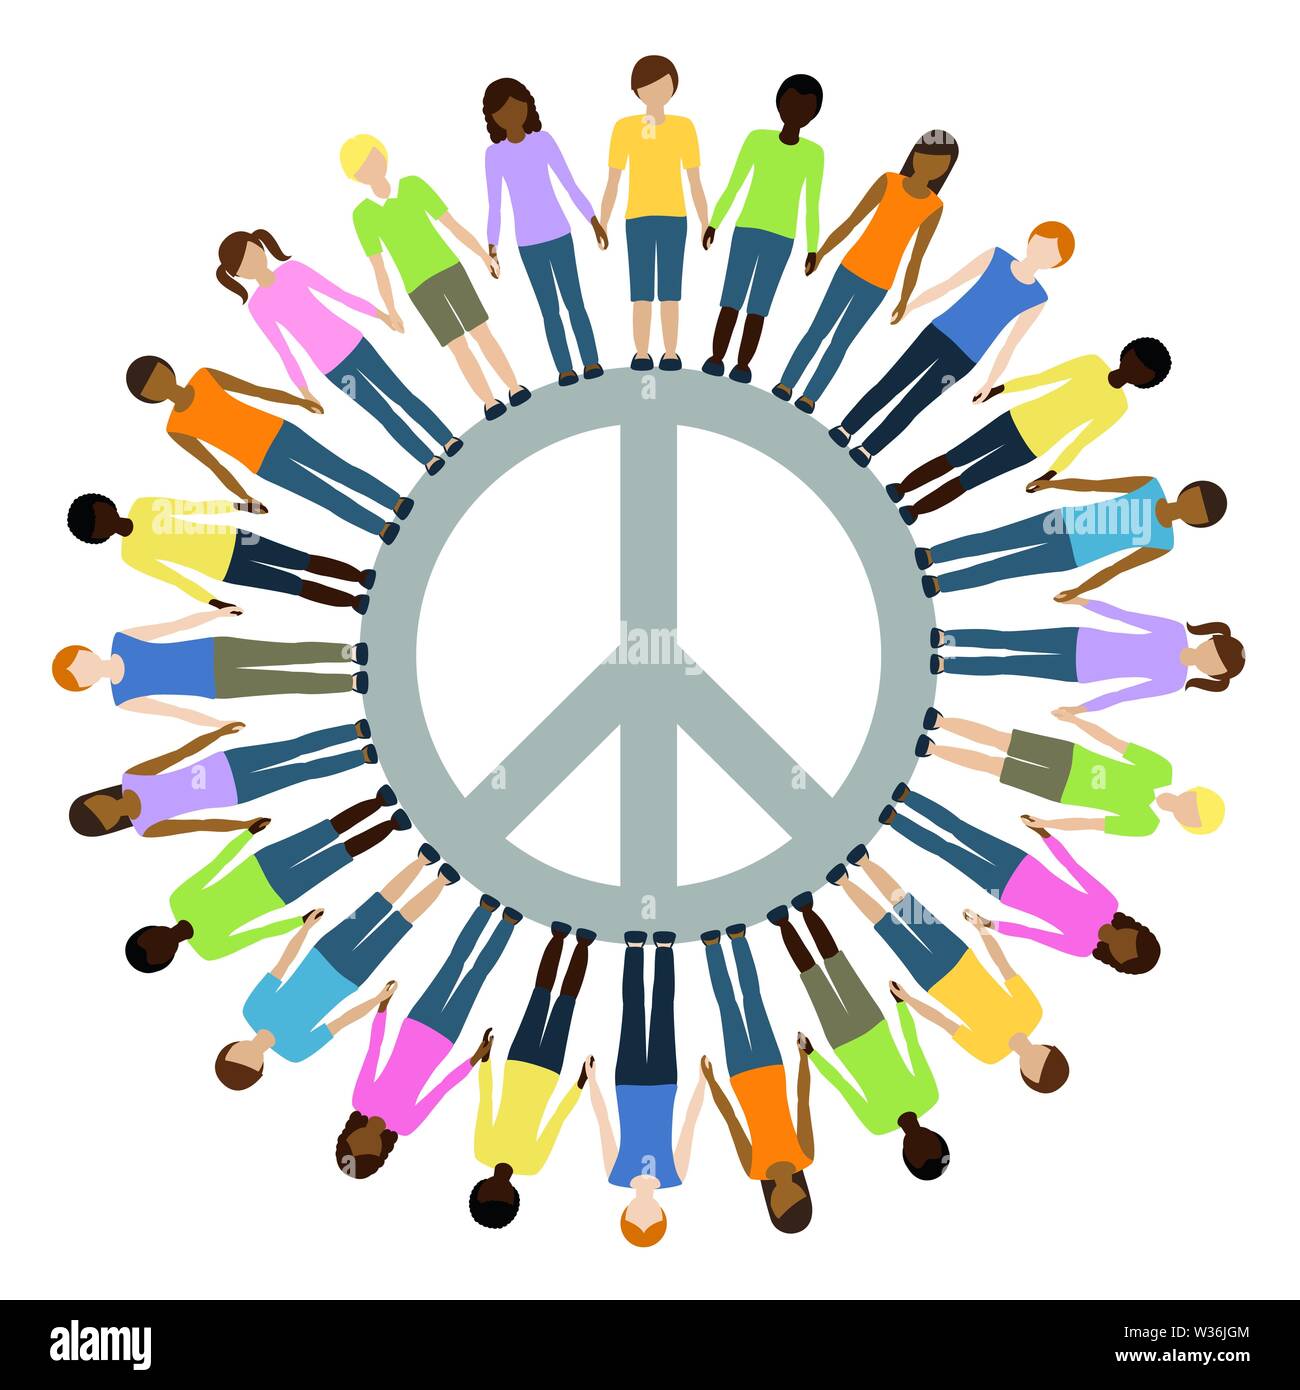 Kinder unterschiedlicher Herkunft mit Peace Symbol Freiheit konzept Vektor-illustration EPS 10. Stock Vektor